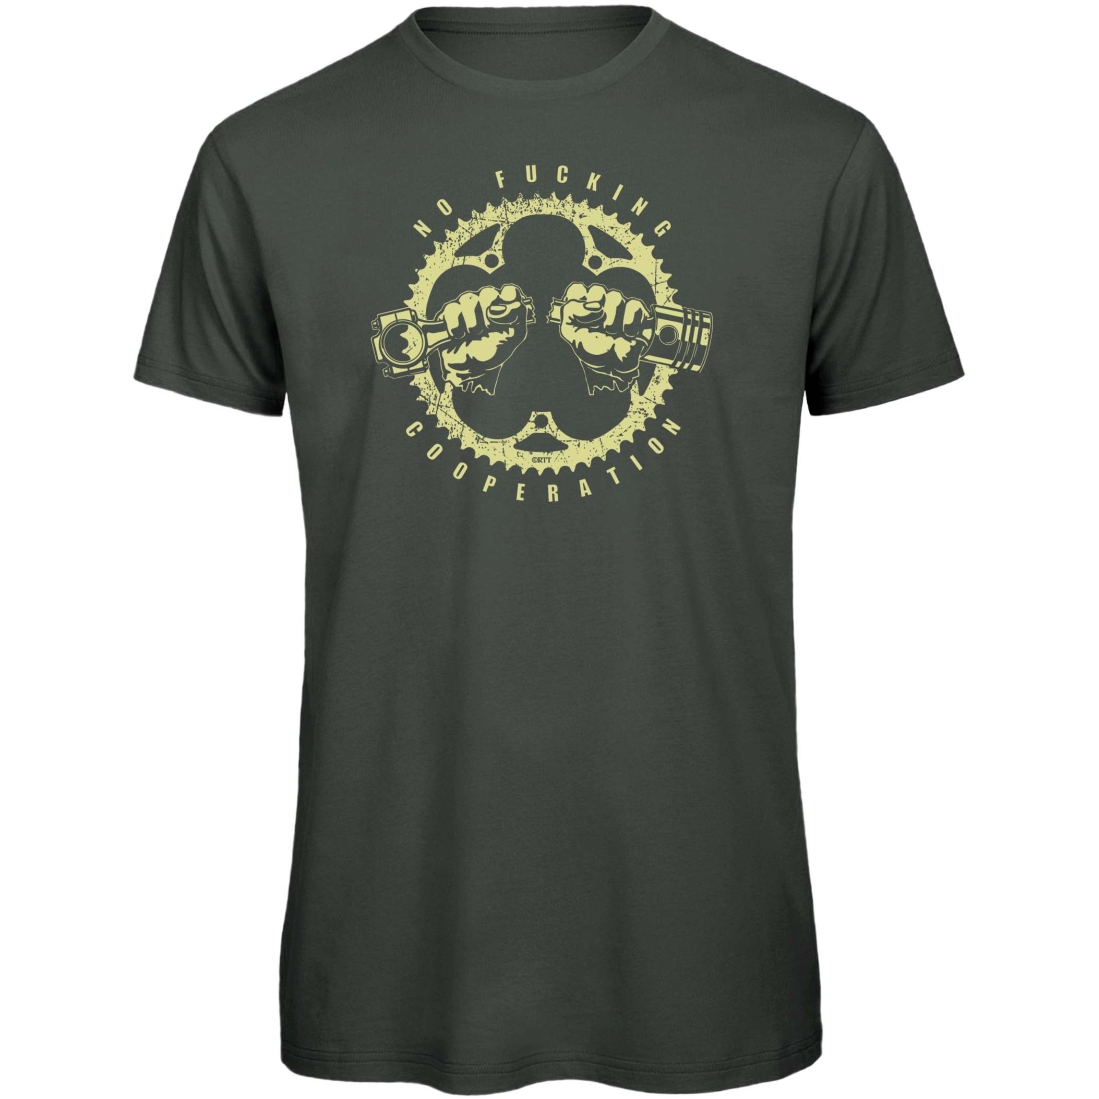 Produktbild von RTTshirts Fahrrad T-Shirt No Fucking Cooperation - dunkelgrau